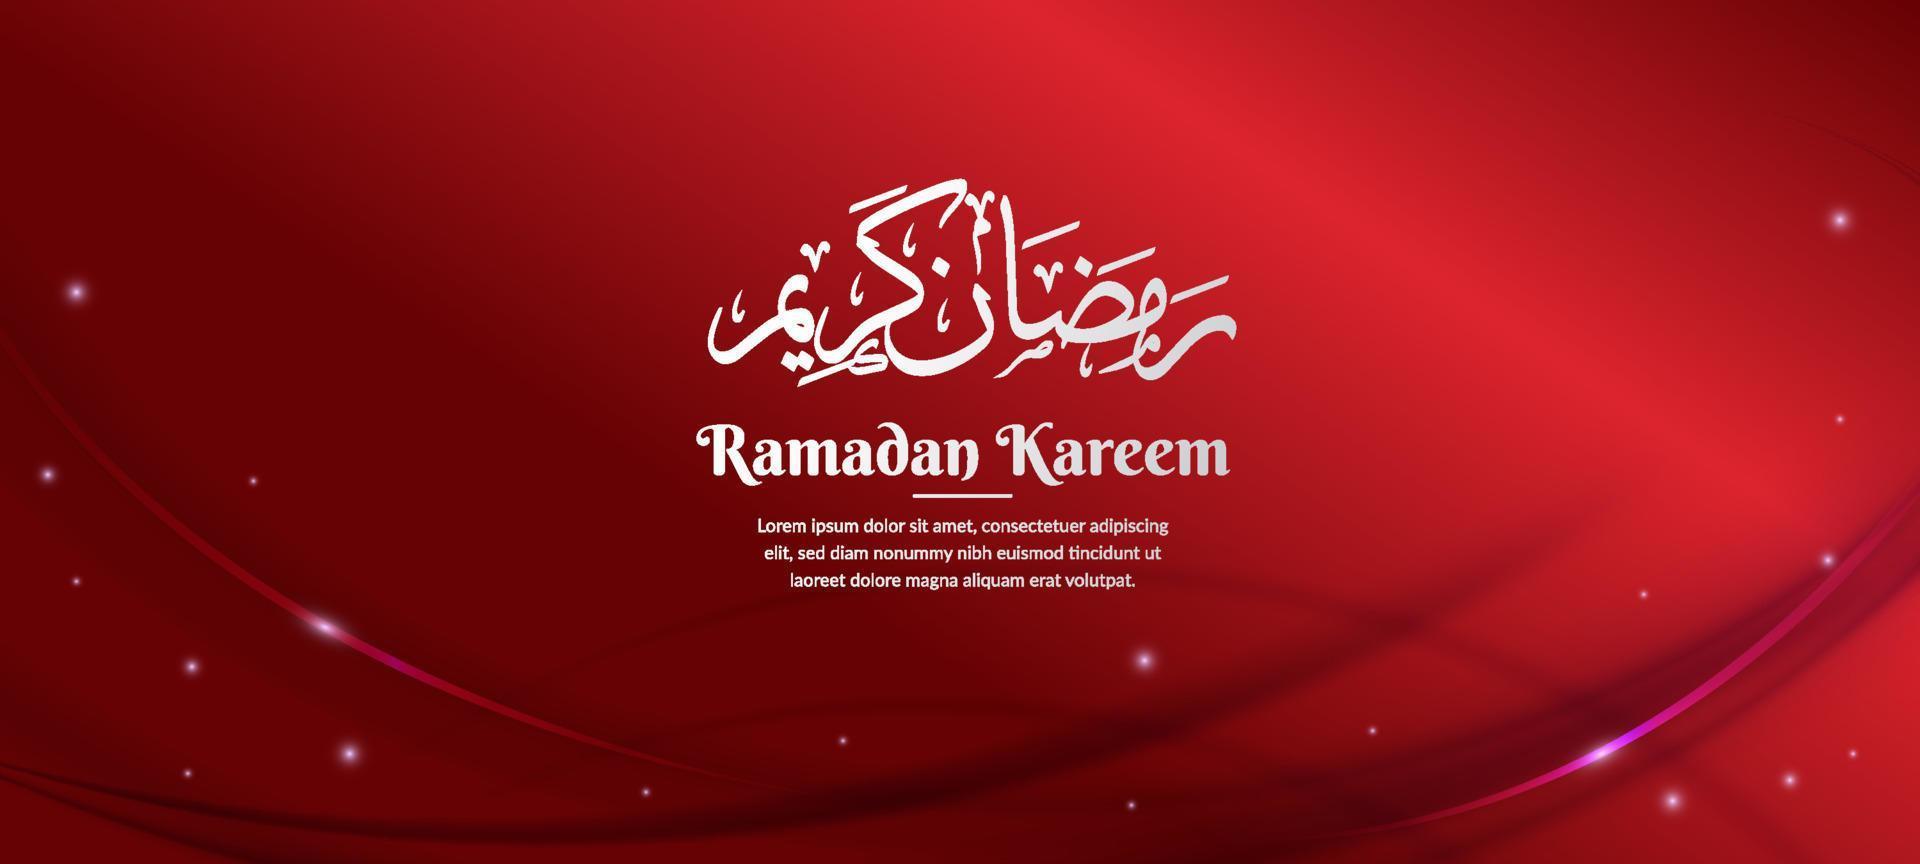 criativo Ramadã kareem Projeto com vermelho cor vetor